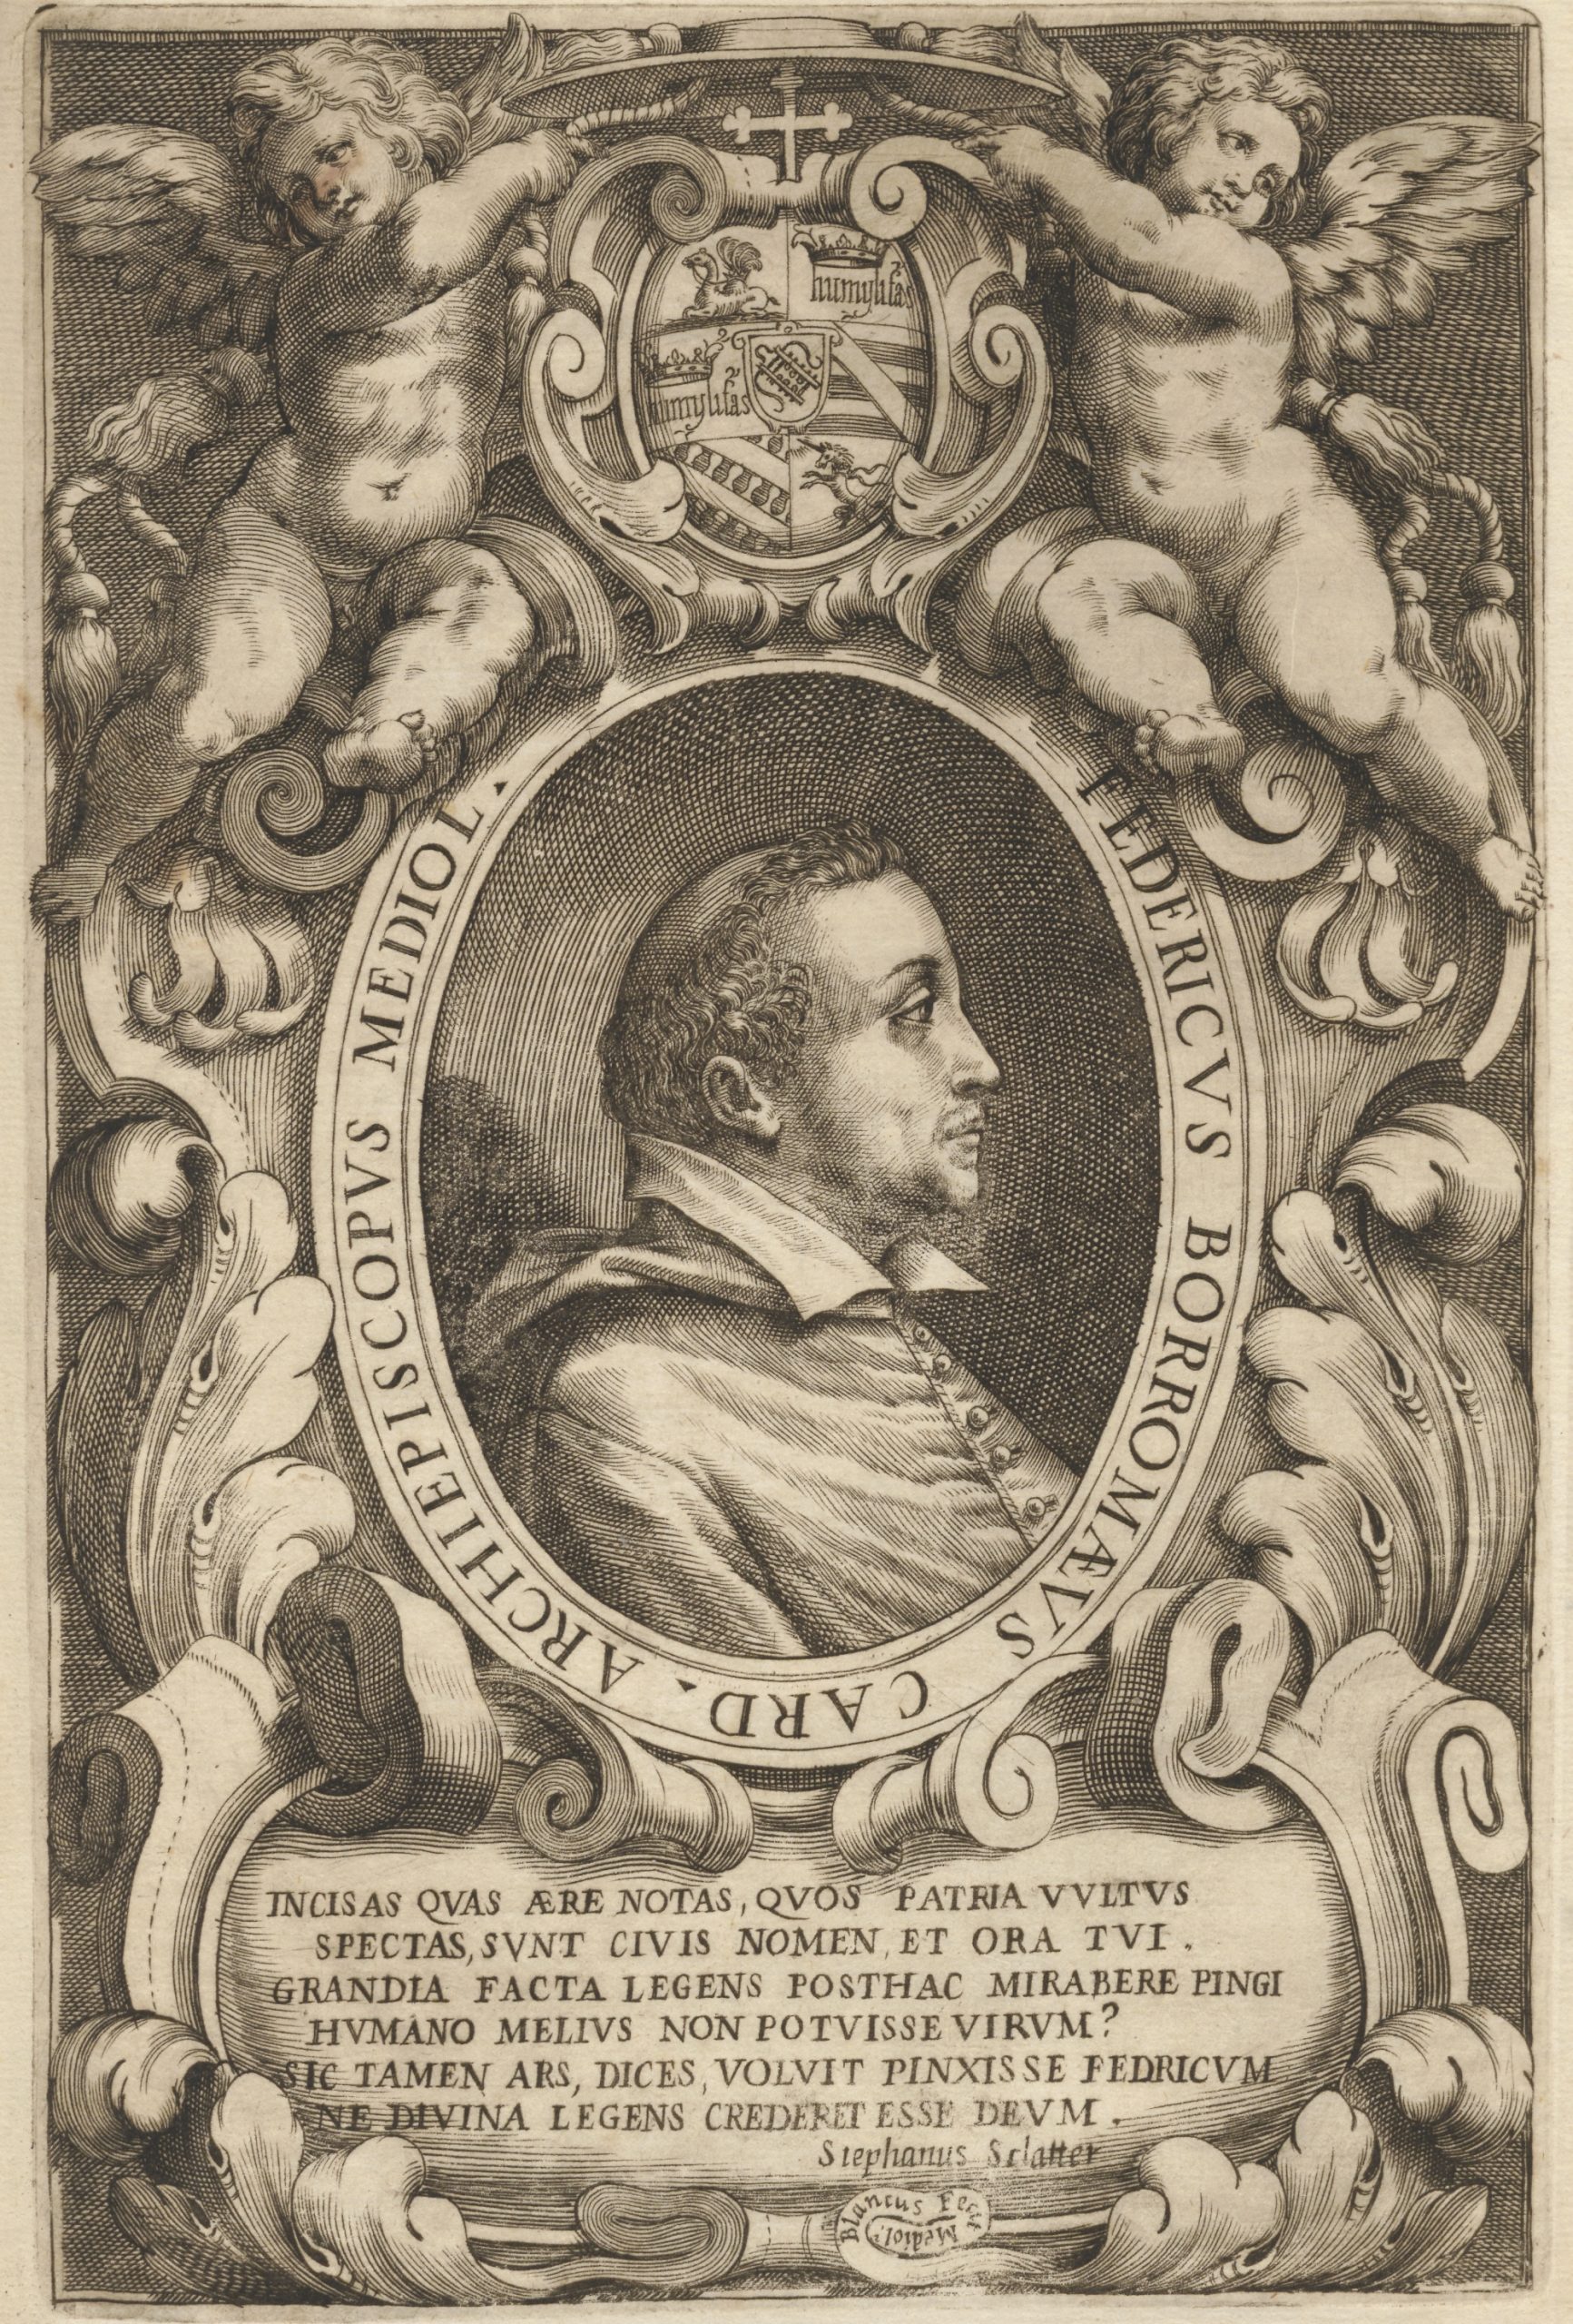 <p>Ritratto di Federico Borromeo, tratto da<br />
<em>Miscellanea riguardante la Biblioteca Ambrosiana e i suoi dottori e prefetti</em><br />
Z351 sup, f. 413v</p>
